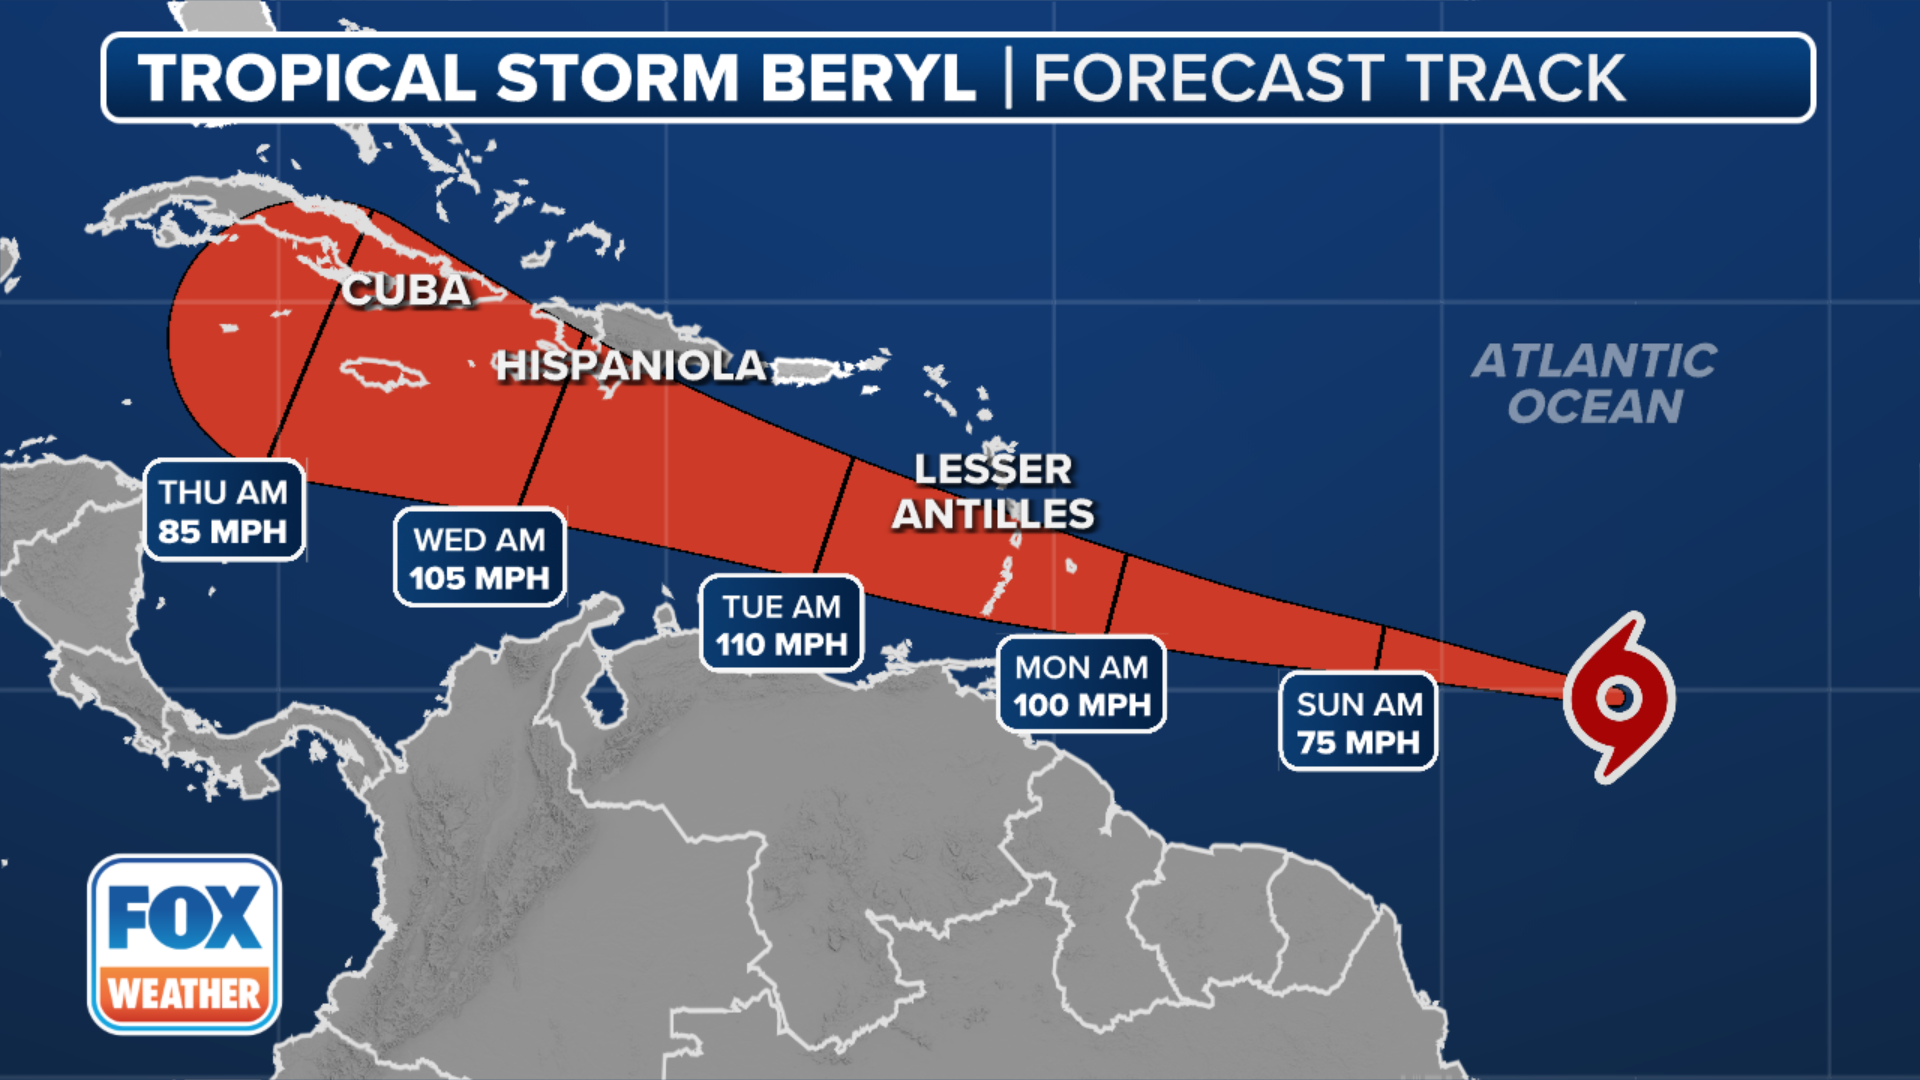 Tropical Storm Beryl now forecast to become a major hurricane